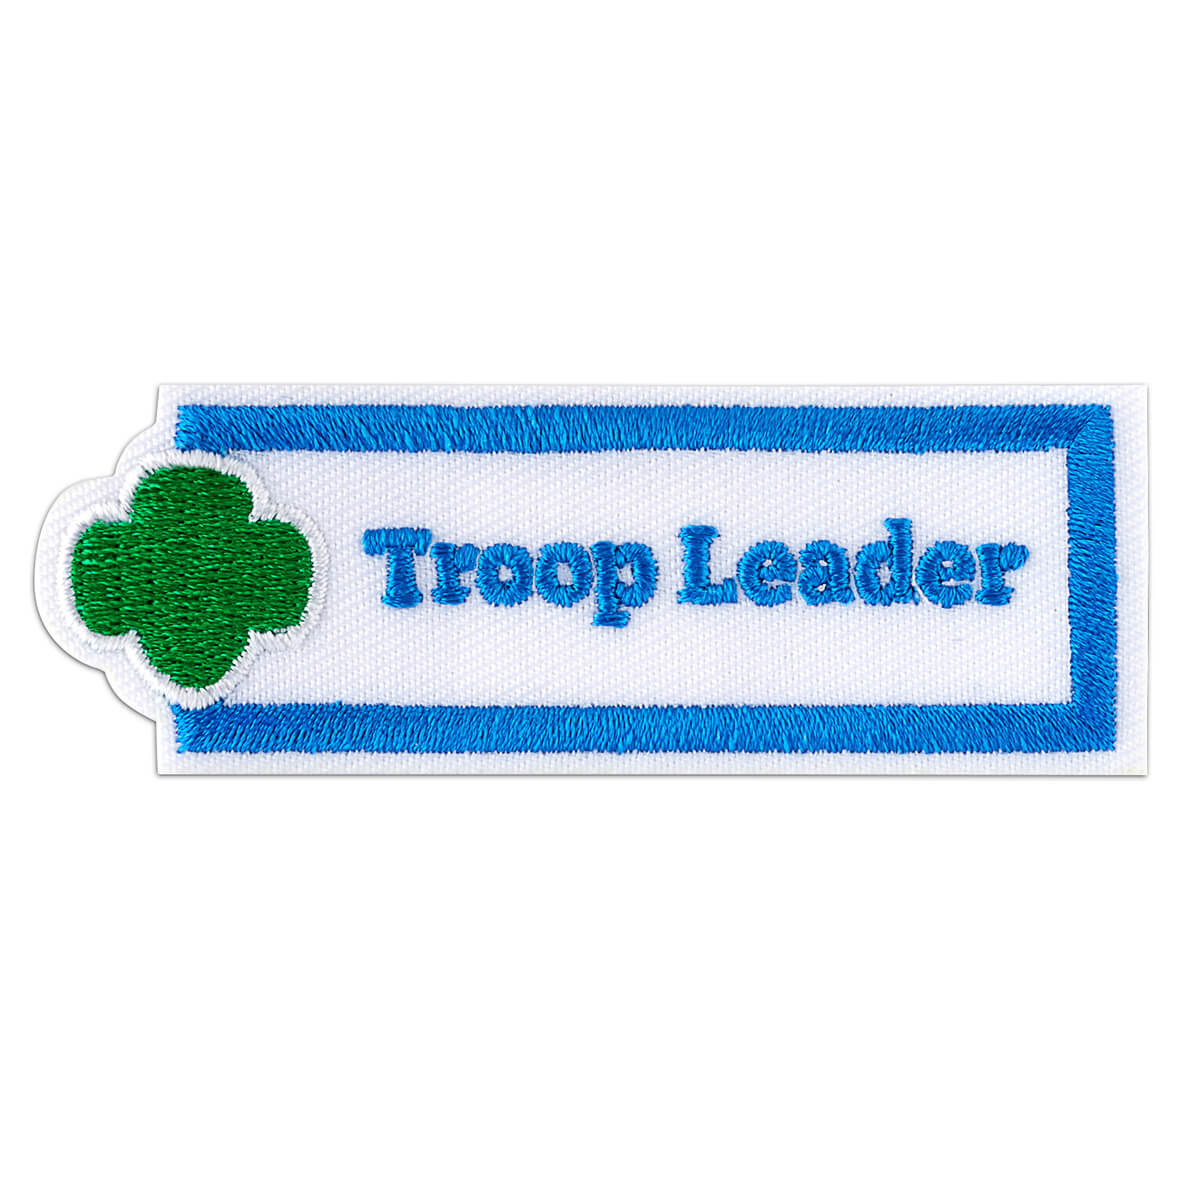 AAP - Troop Leader 